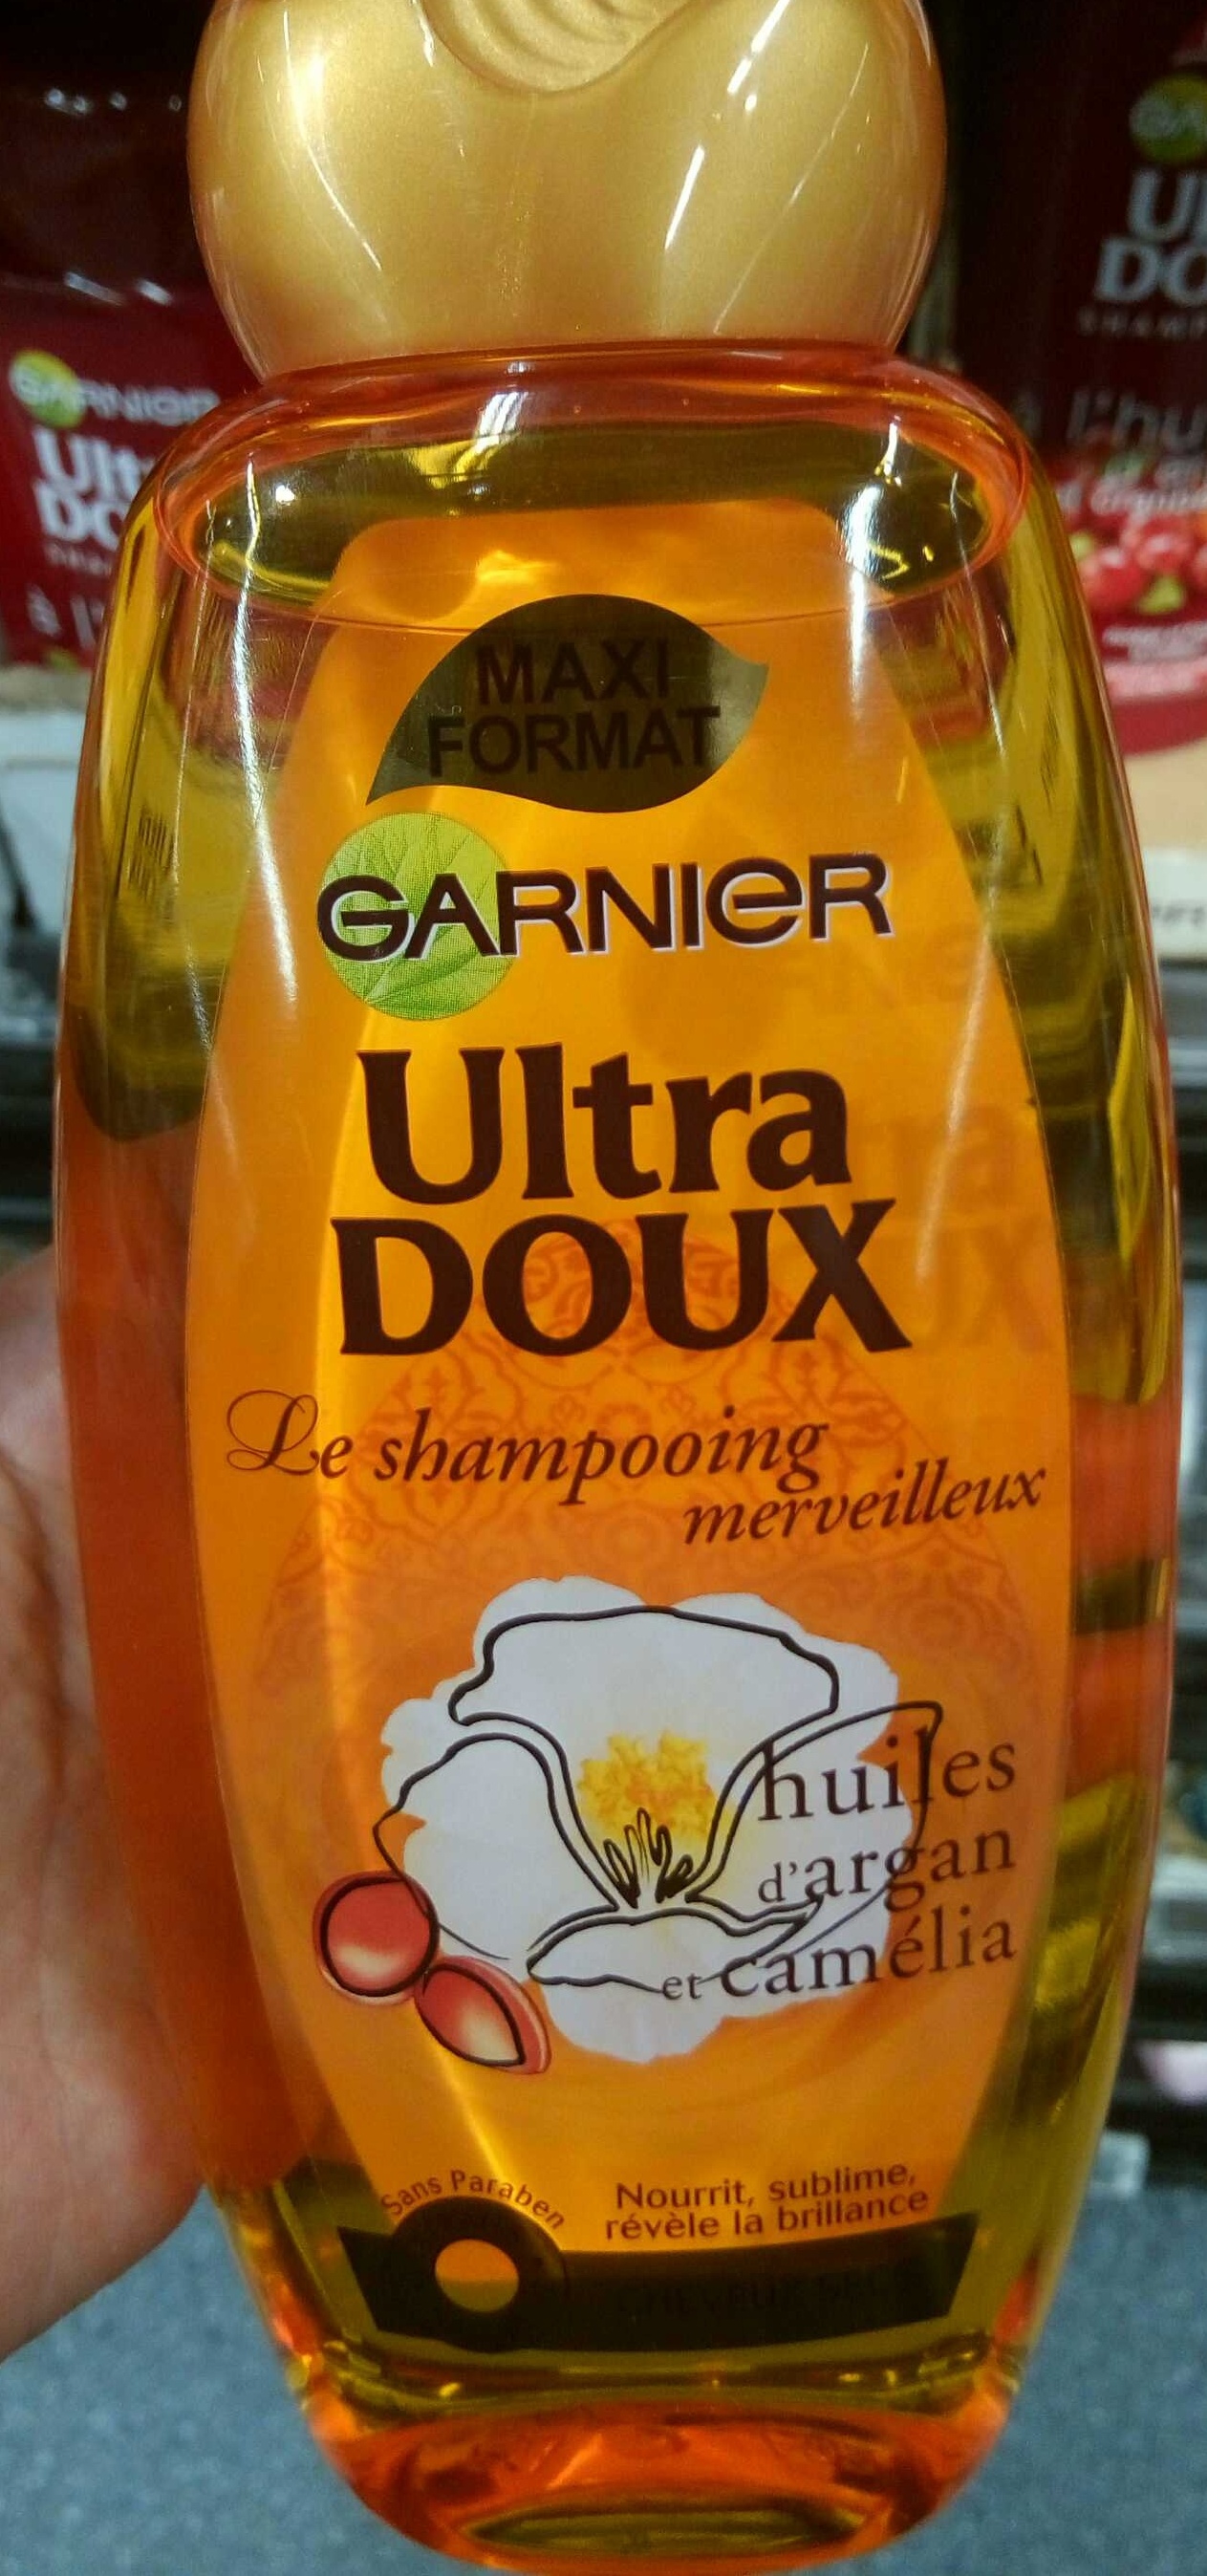 Ultra Doux Le shampooing merveilleux Huiles d'Argan et Camélia (maxi format) - Produit - fr